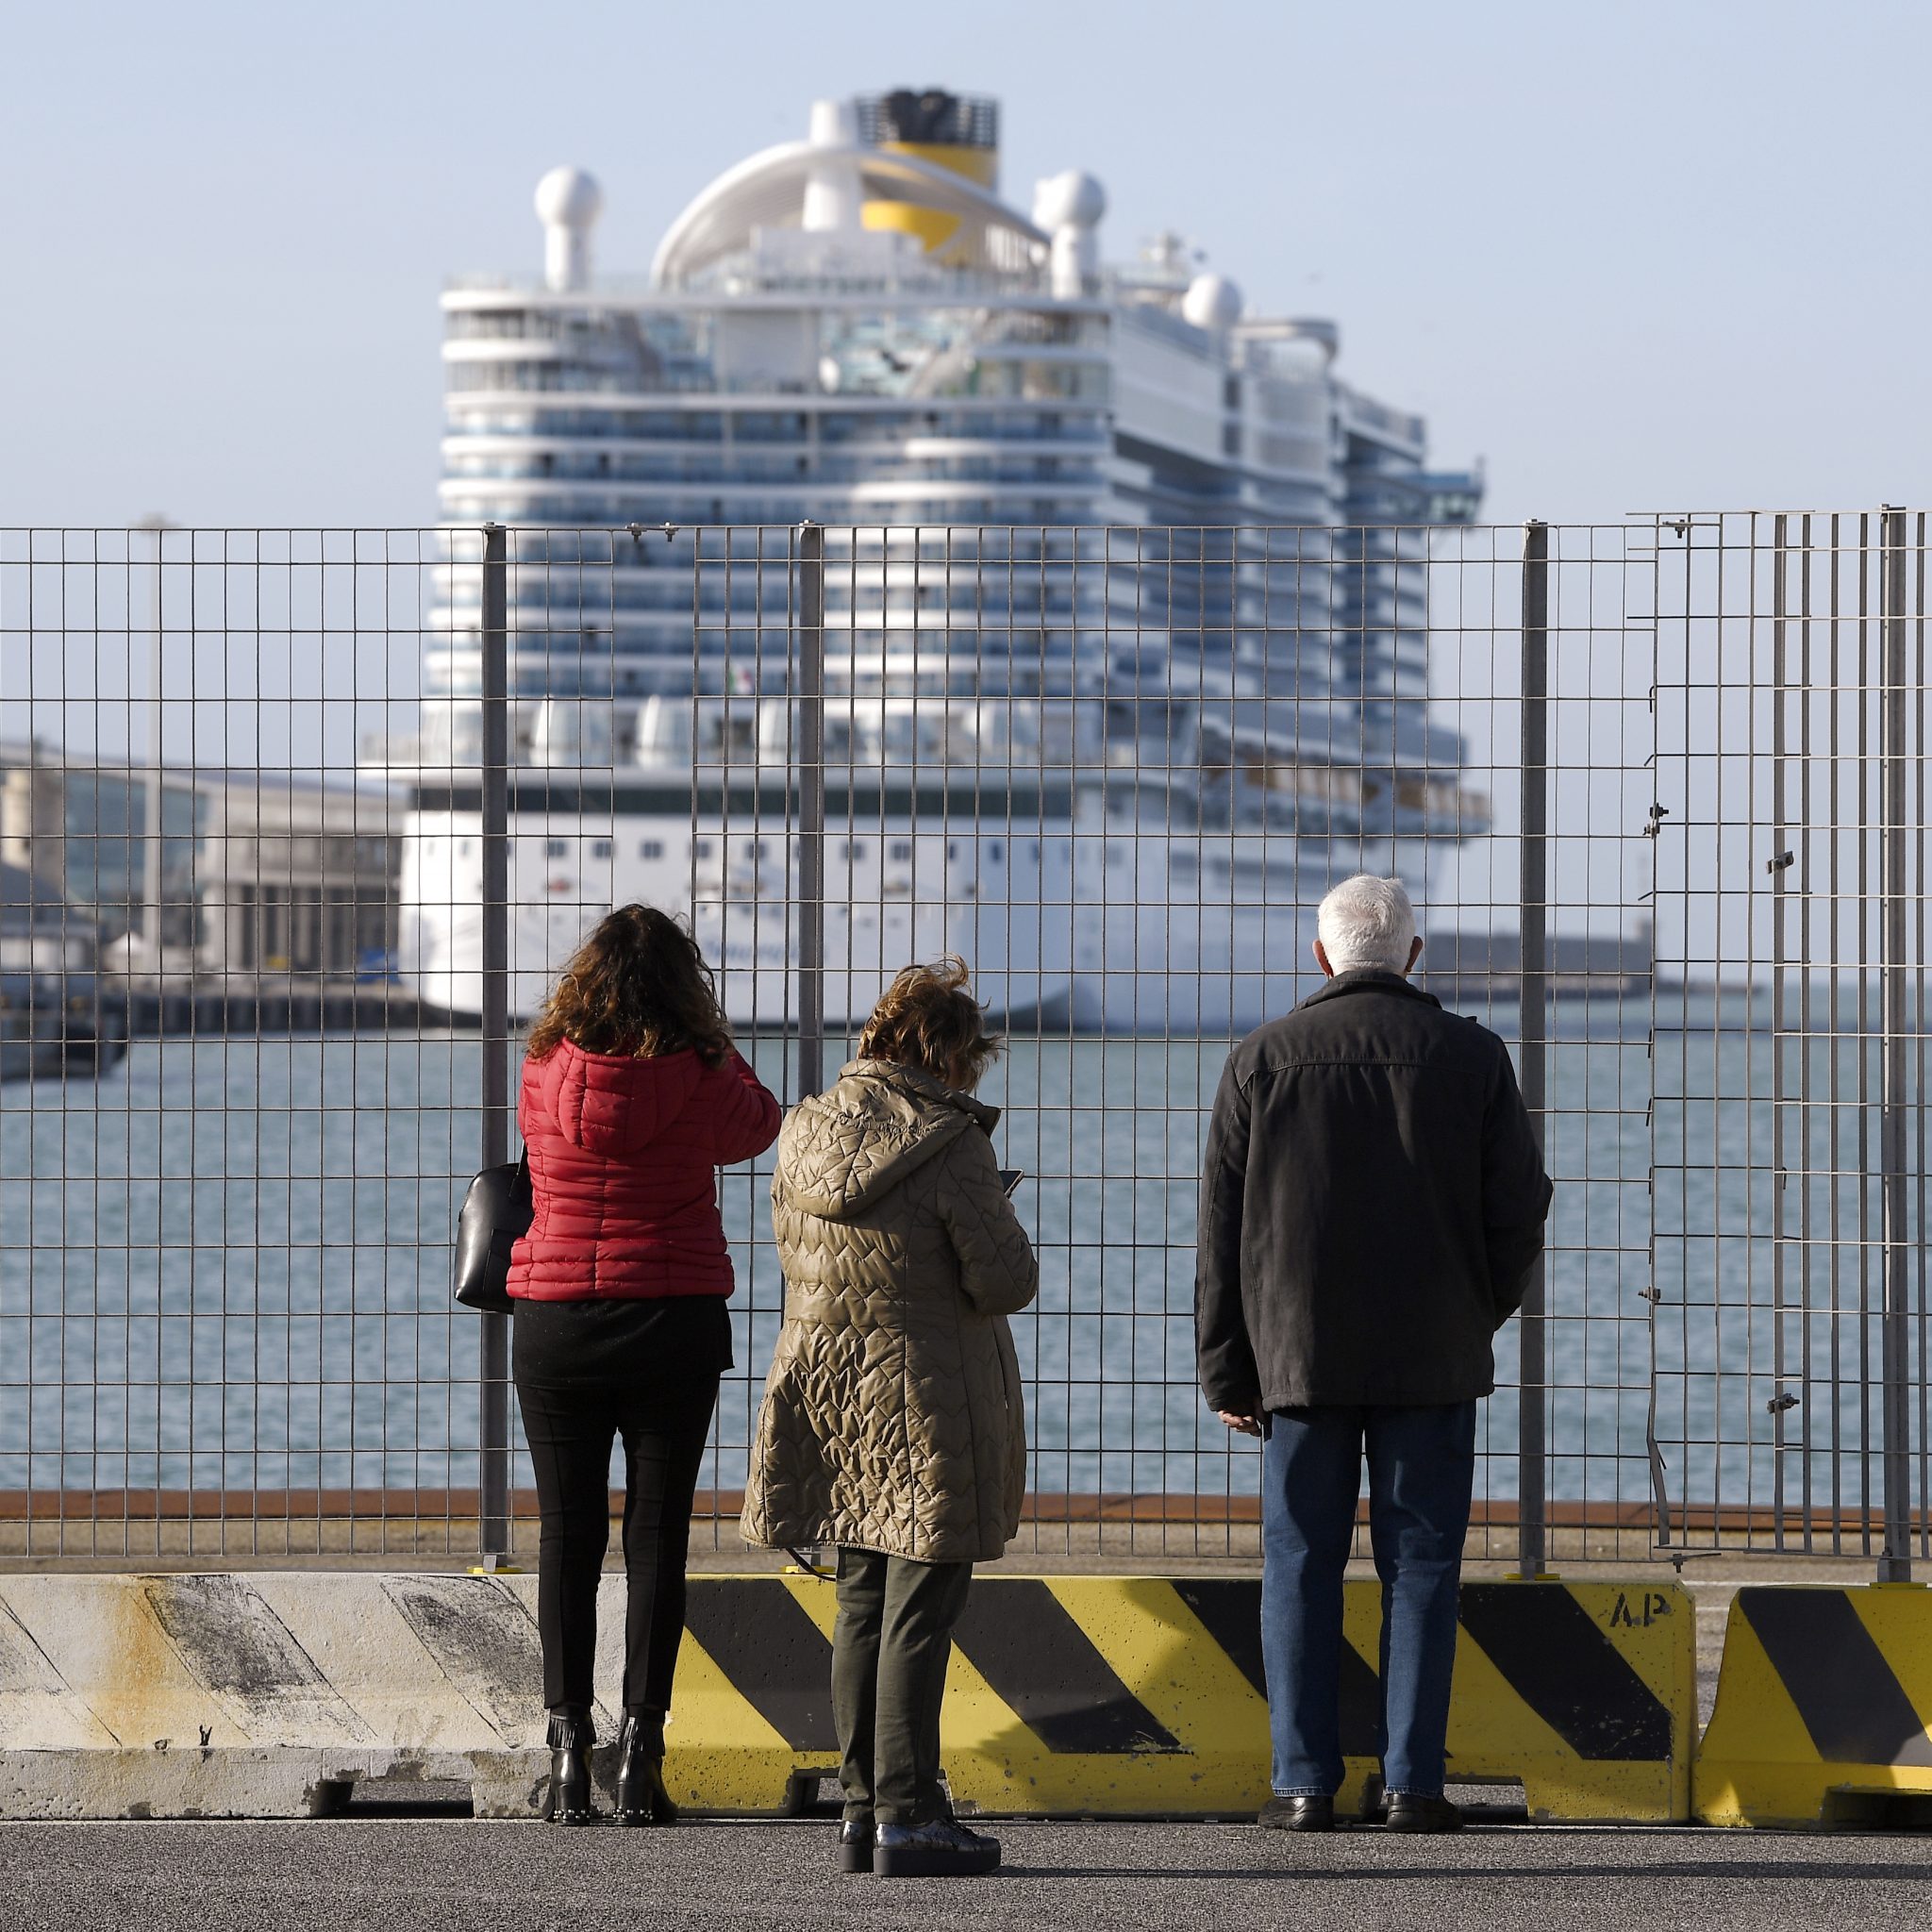 Mensen kijken naar de Costa Smeralda in de haven van Cvitavecchia. Meer dan 6000 gasten mochten het schip niet verlaten, nadat bij twee Chinese passagiers ziek waren gemeld. Ze bleken echter niet besmet met het coronavirus. (Foto Filippo Monteforte / AFP)